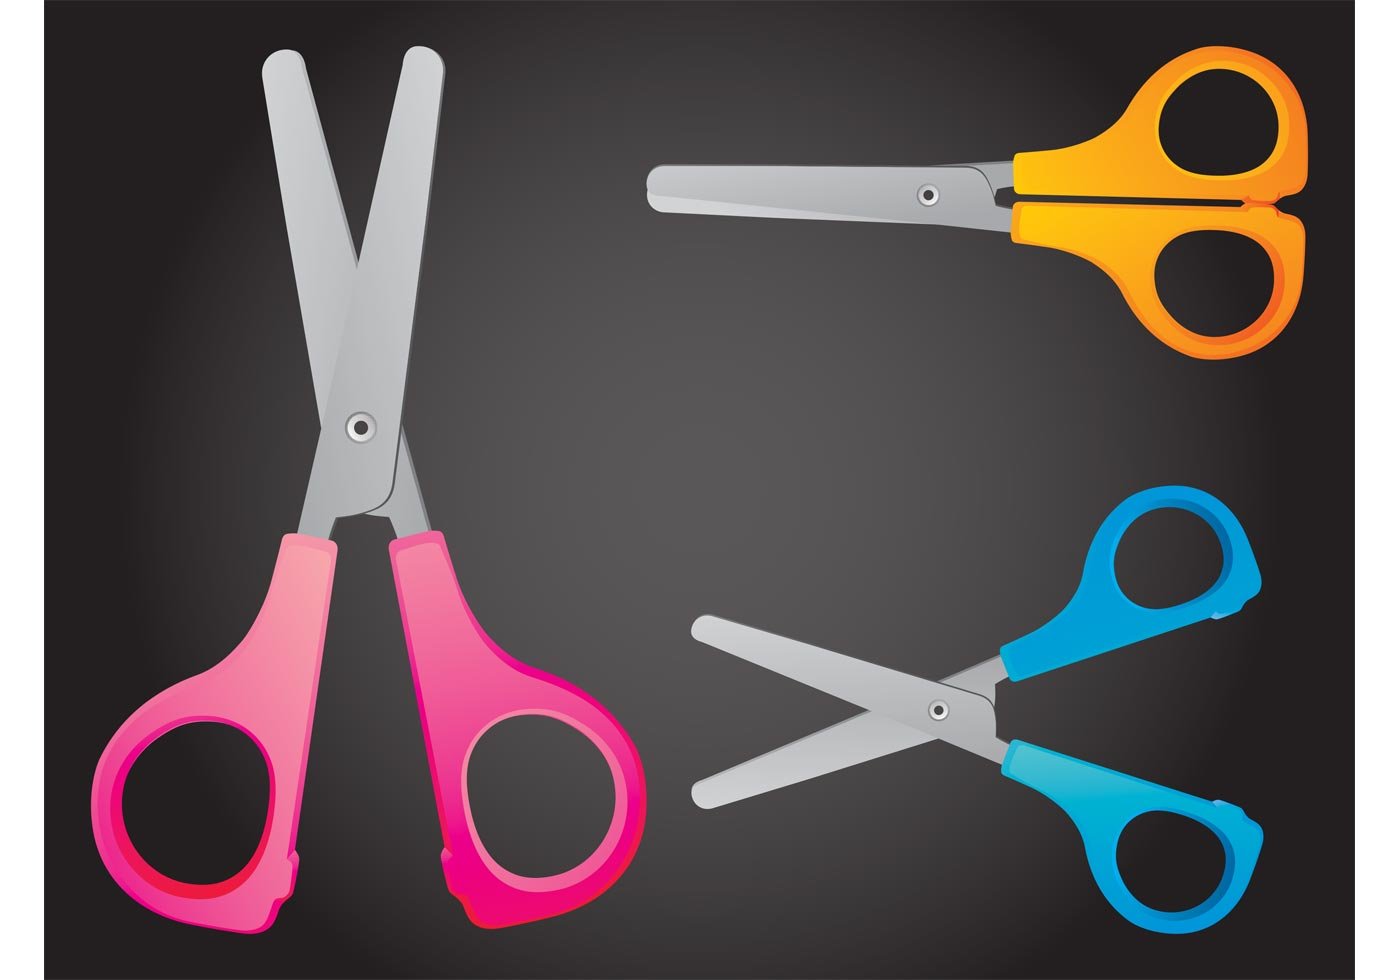 Nikko straps scissors amateur